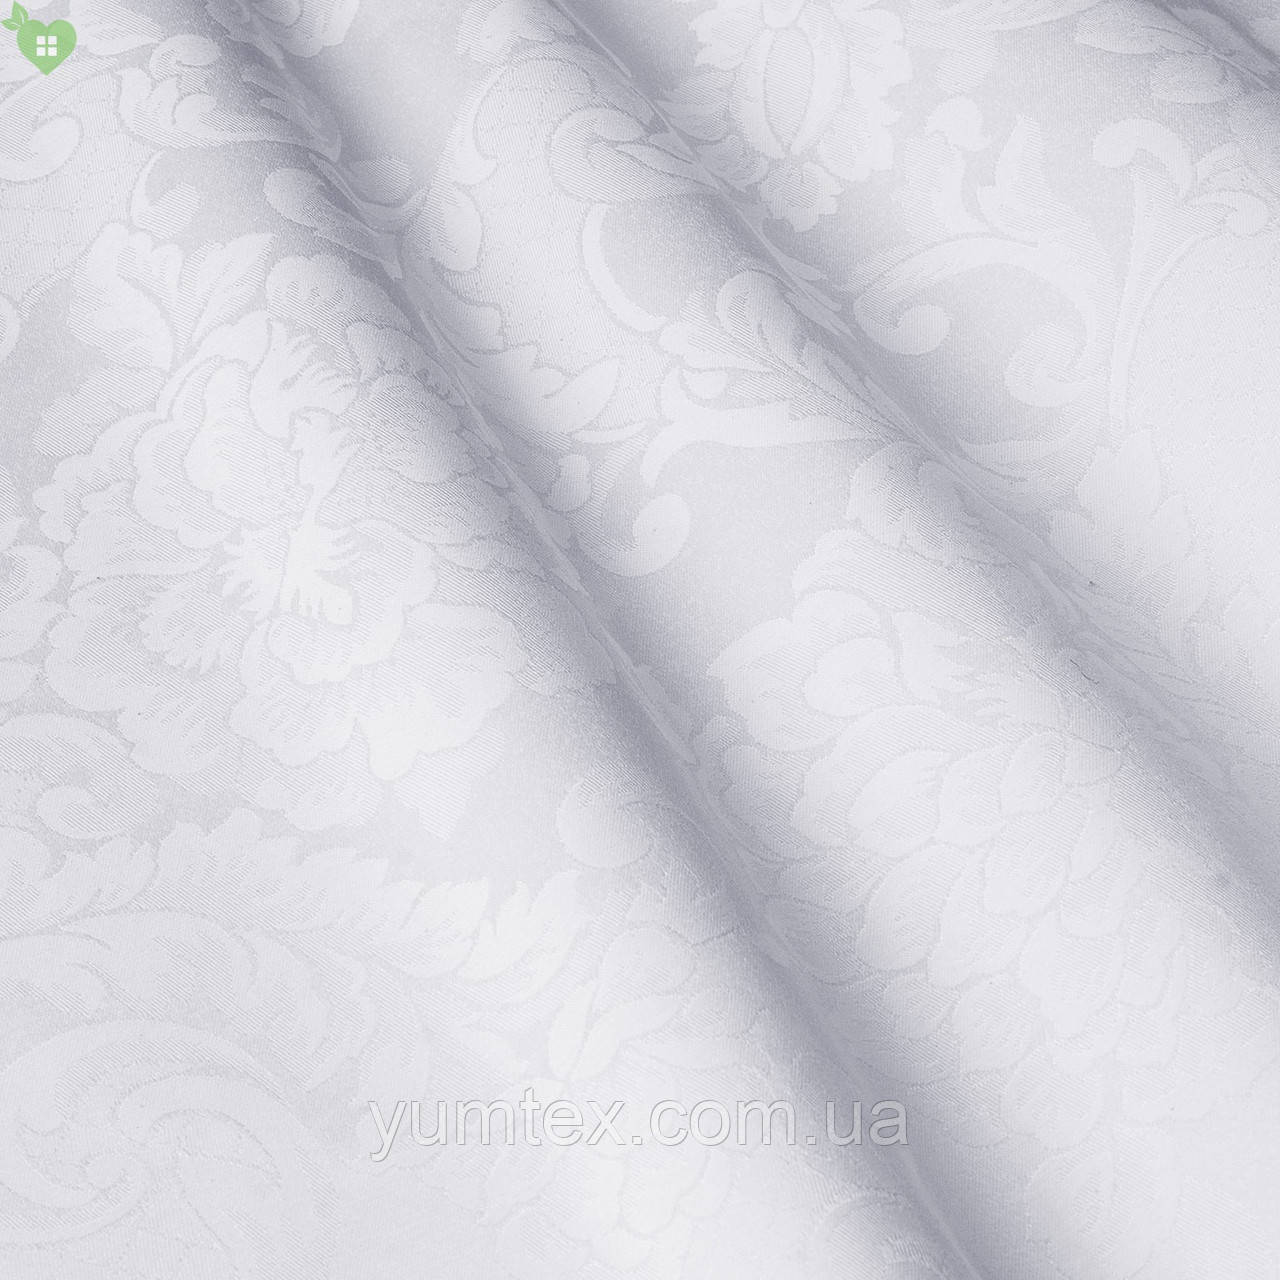 Скатертинна тканина для ресторану з вензелем білого кольору Італія